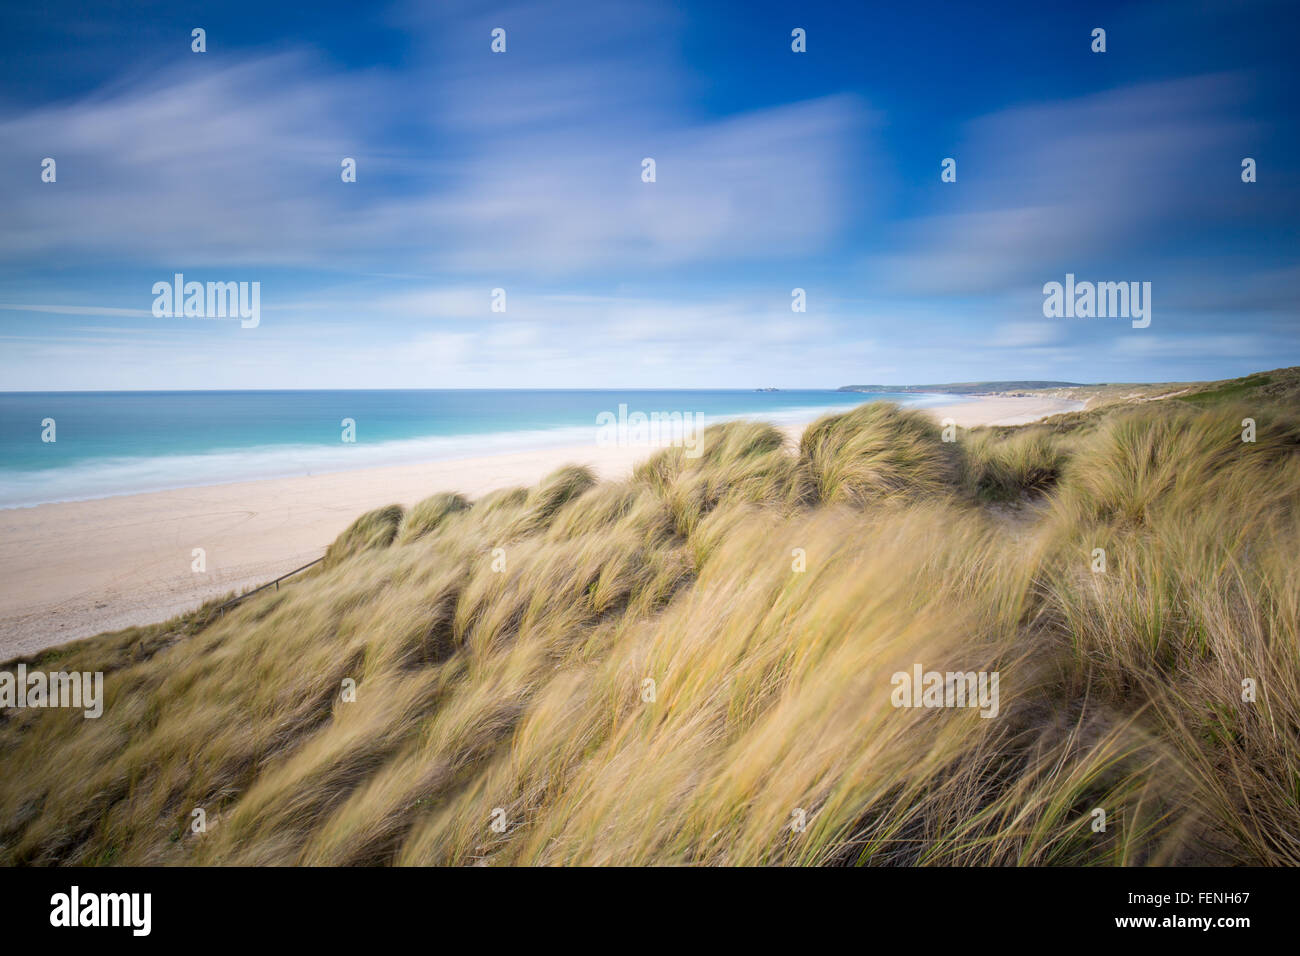 Images de paysage atmosphérique de Gwithian beach à Cornwall. Banque D'Images